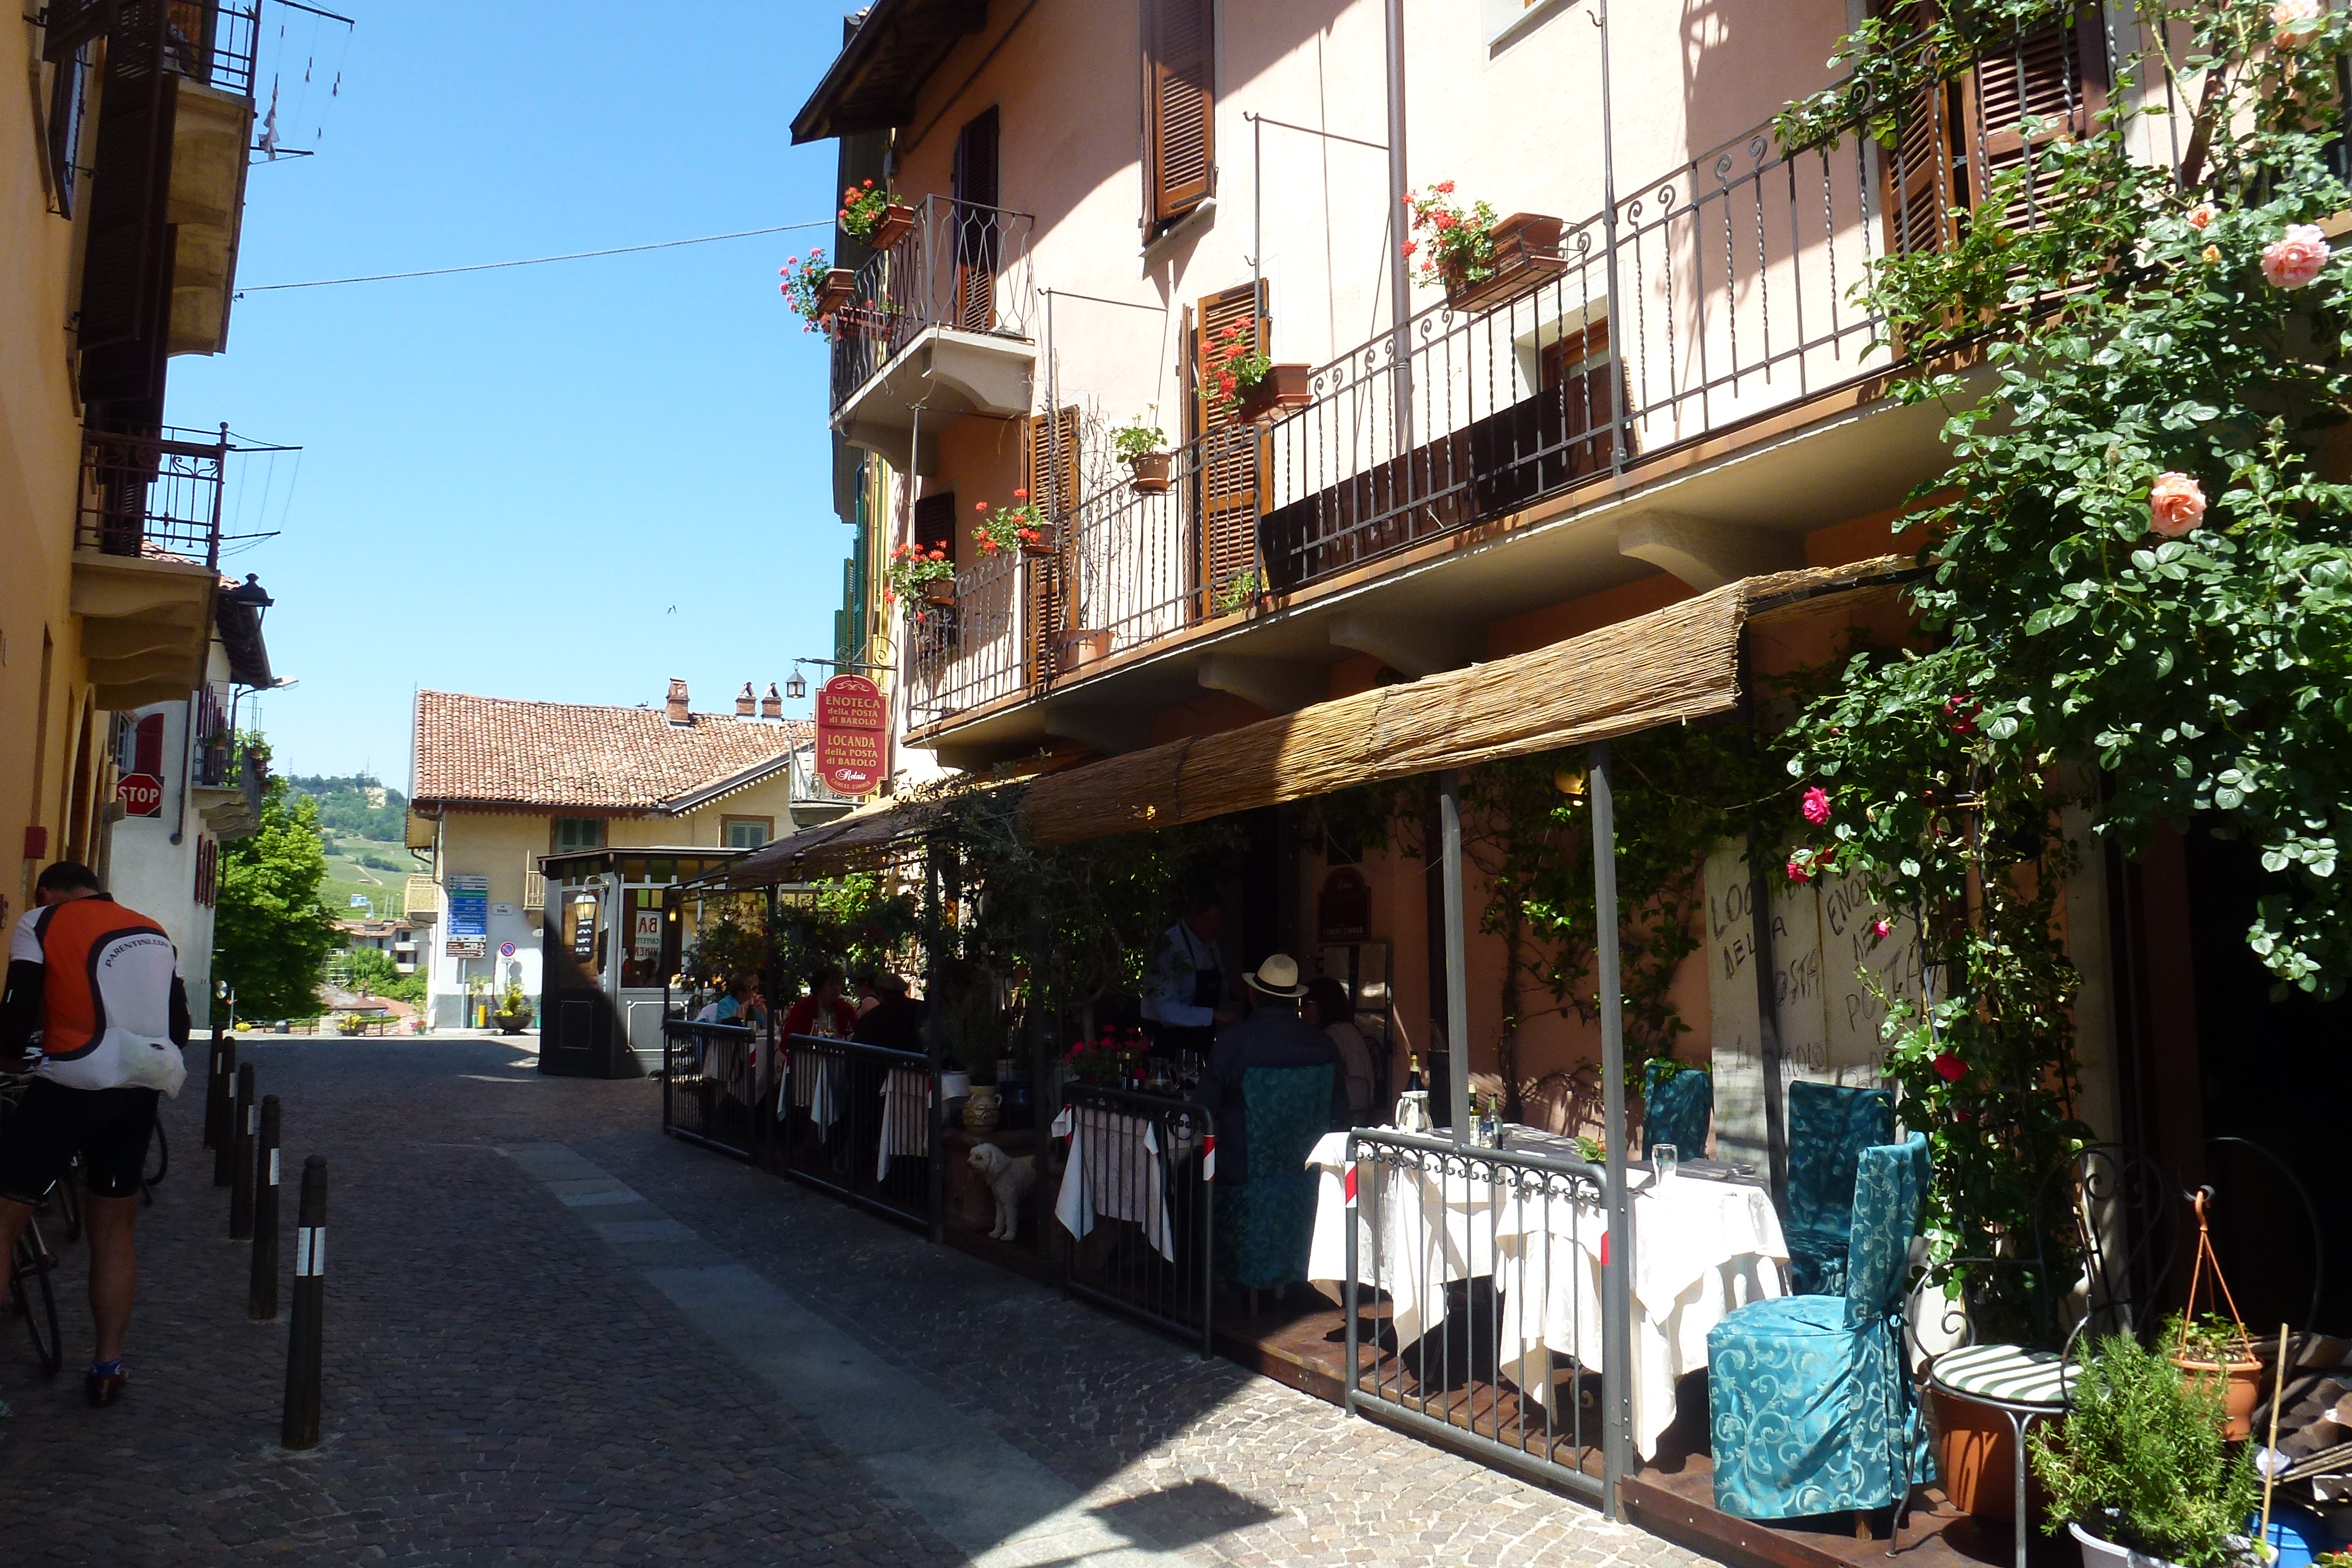 Piedmont typical village restaurant